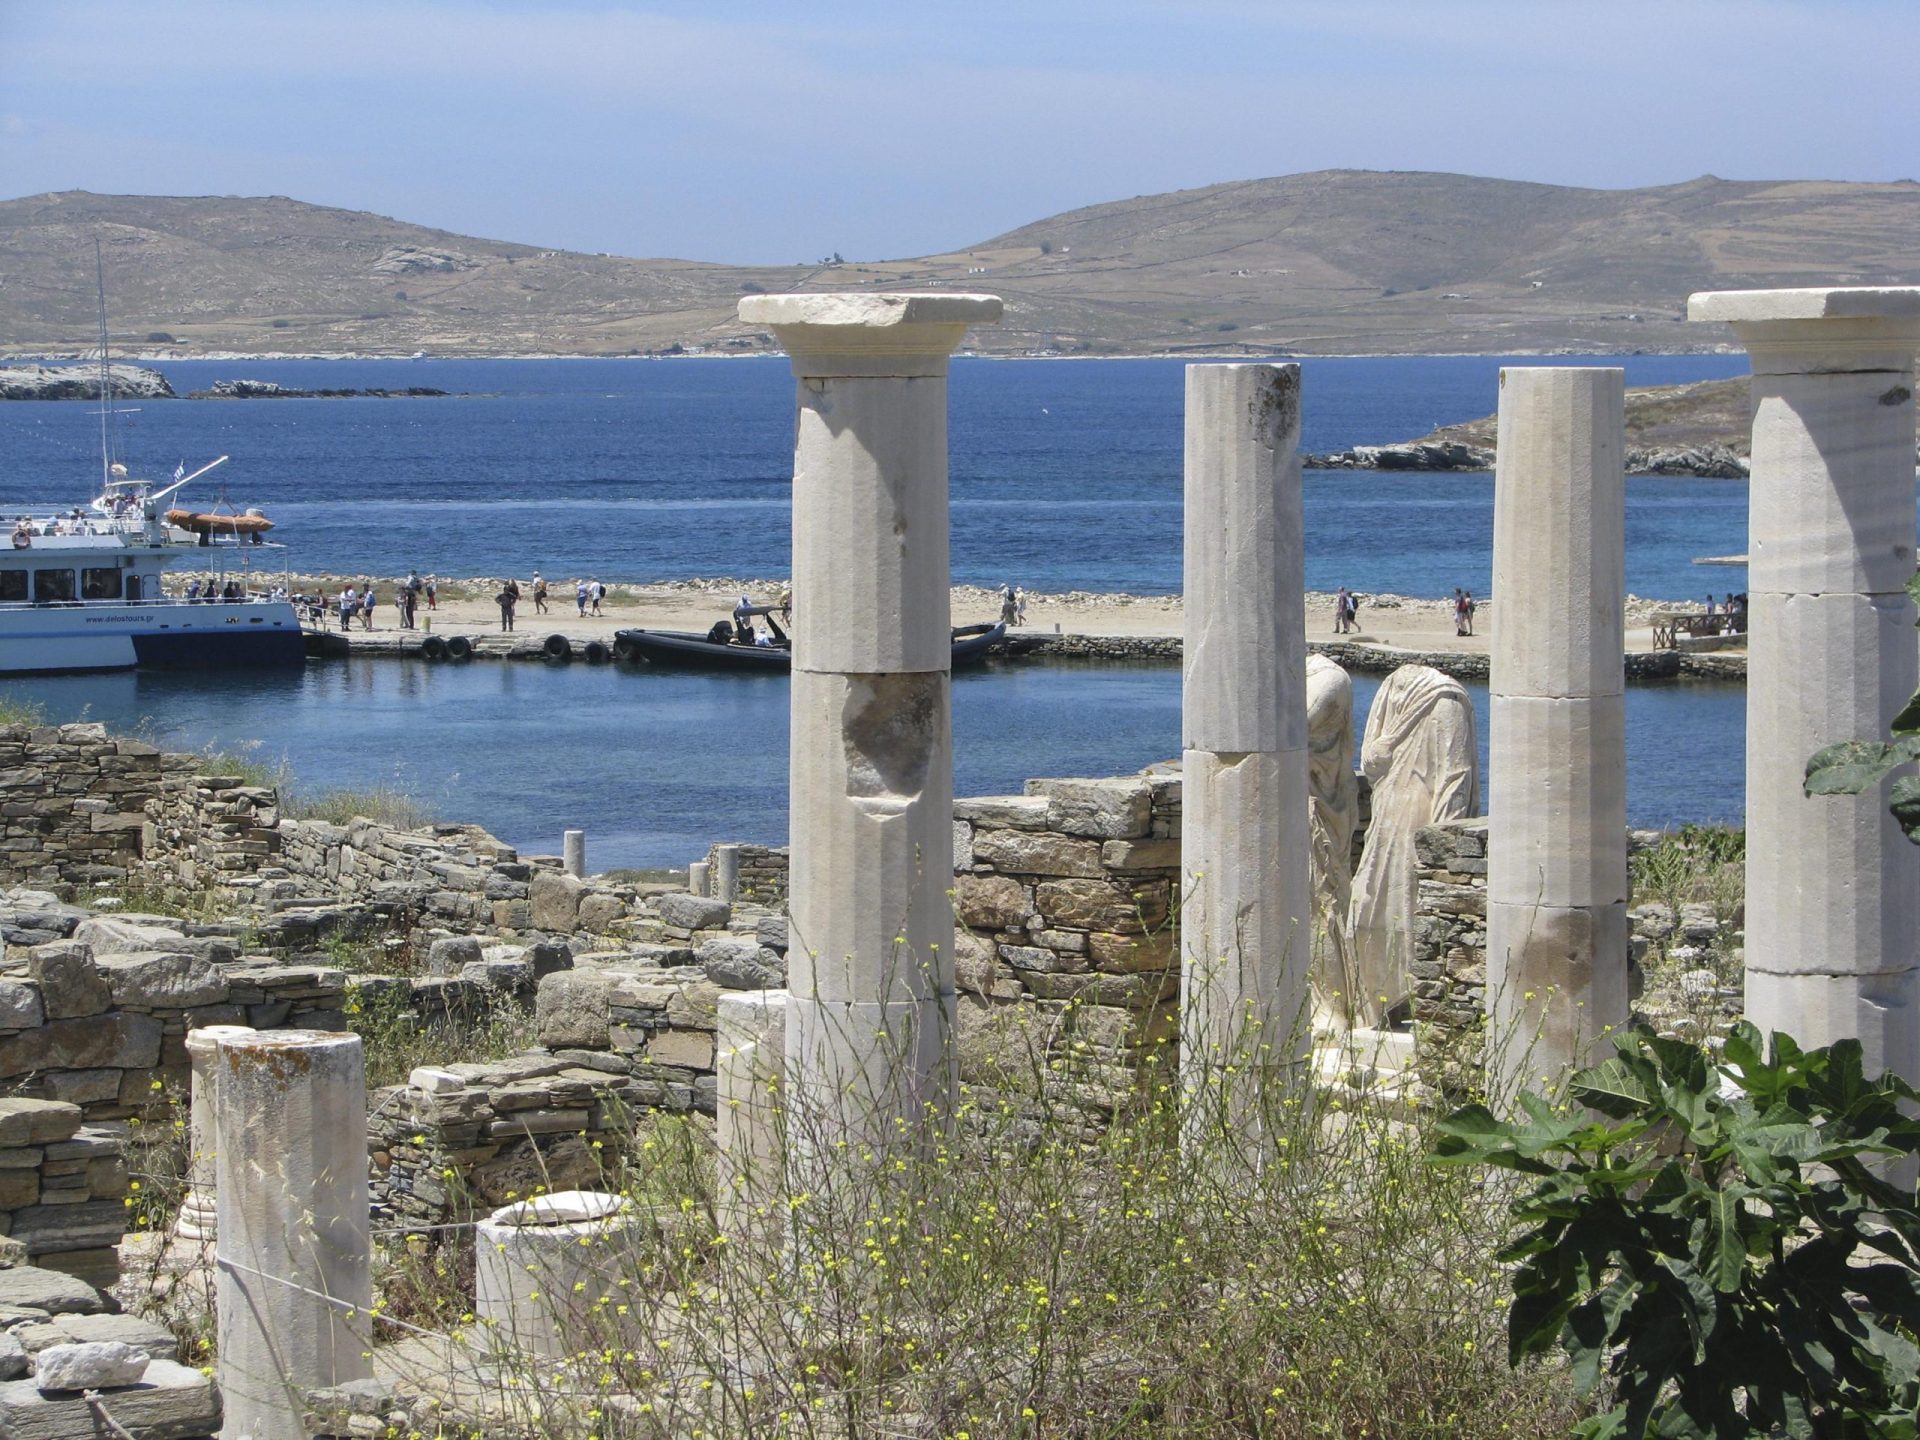 Lista de deseos reimaginada: Regreso consciente a las islas griegas